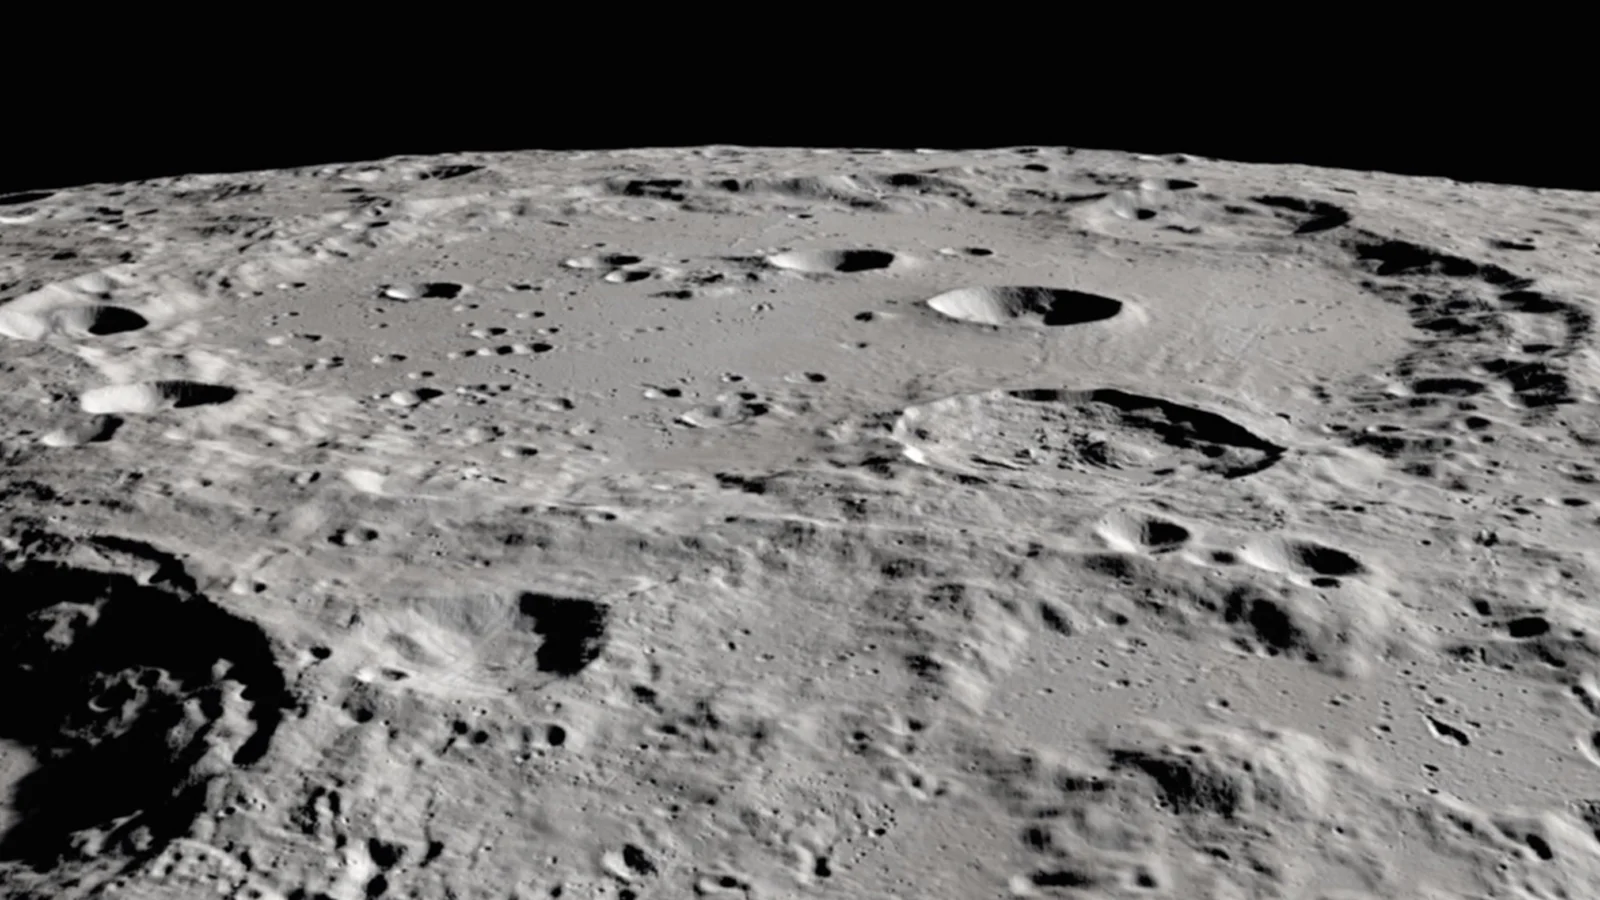 water-moon-clavius-crater-nasa